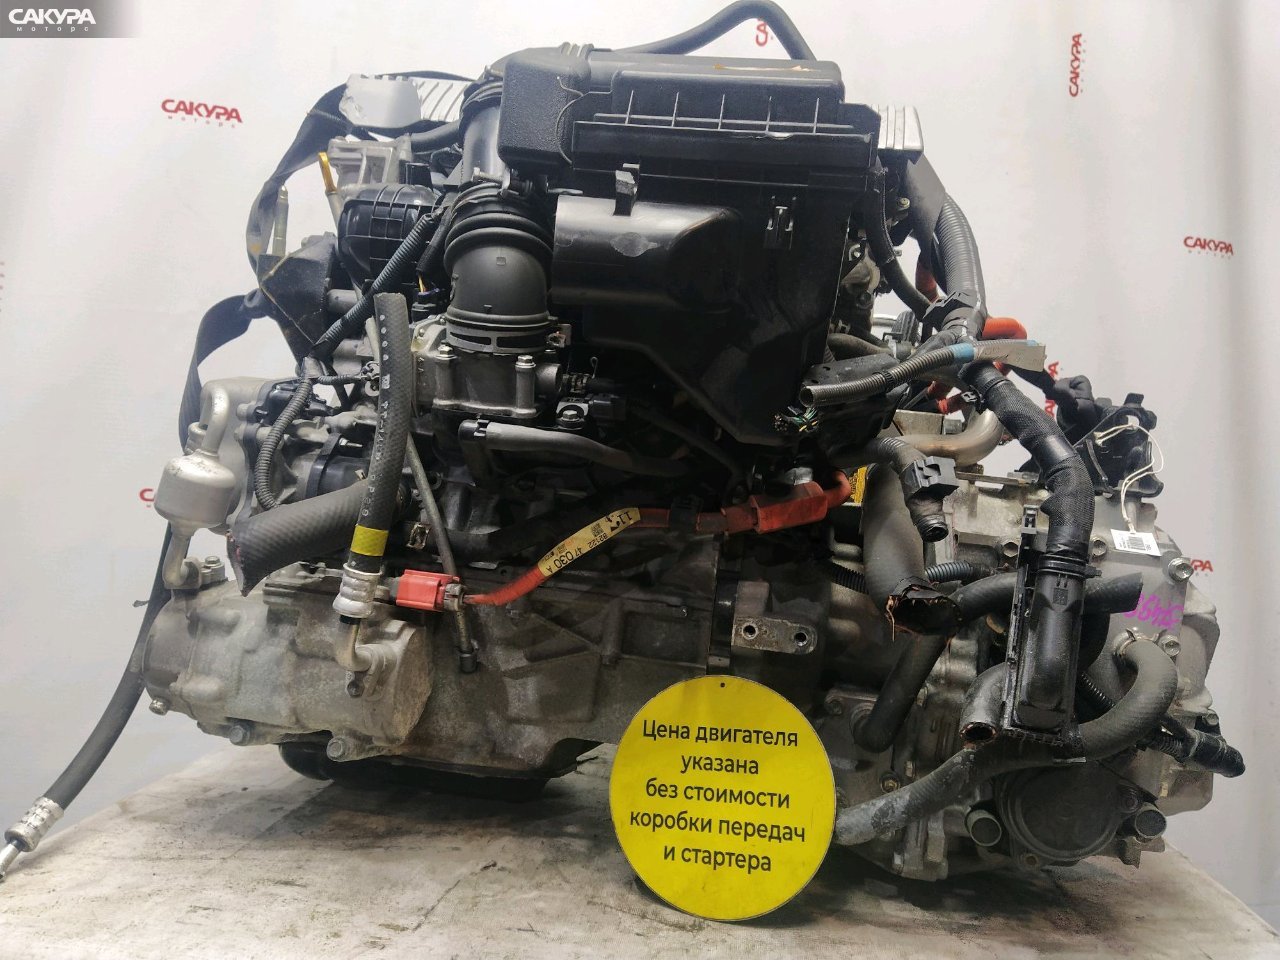 Двигатель Toyota Prius Alpha ZVW40W 2ZR-FXE: купить в Сакура Красноярск.